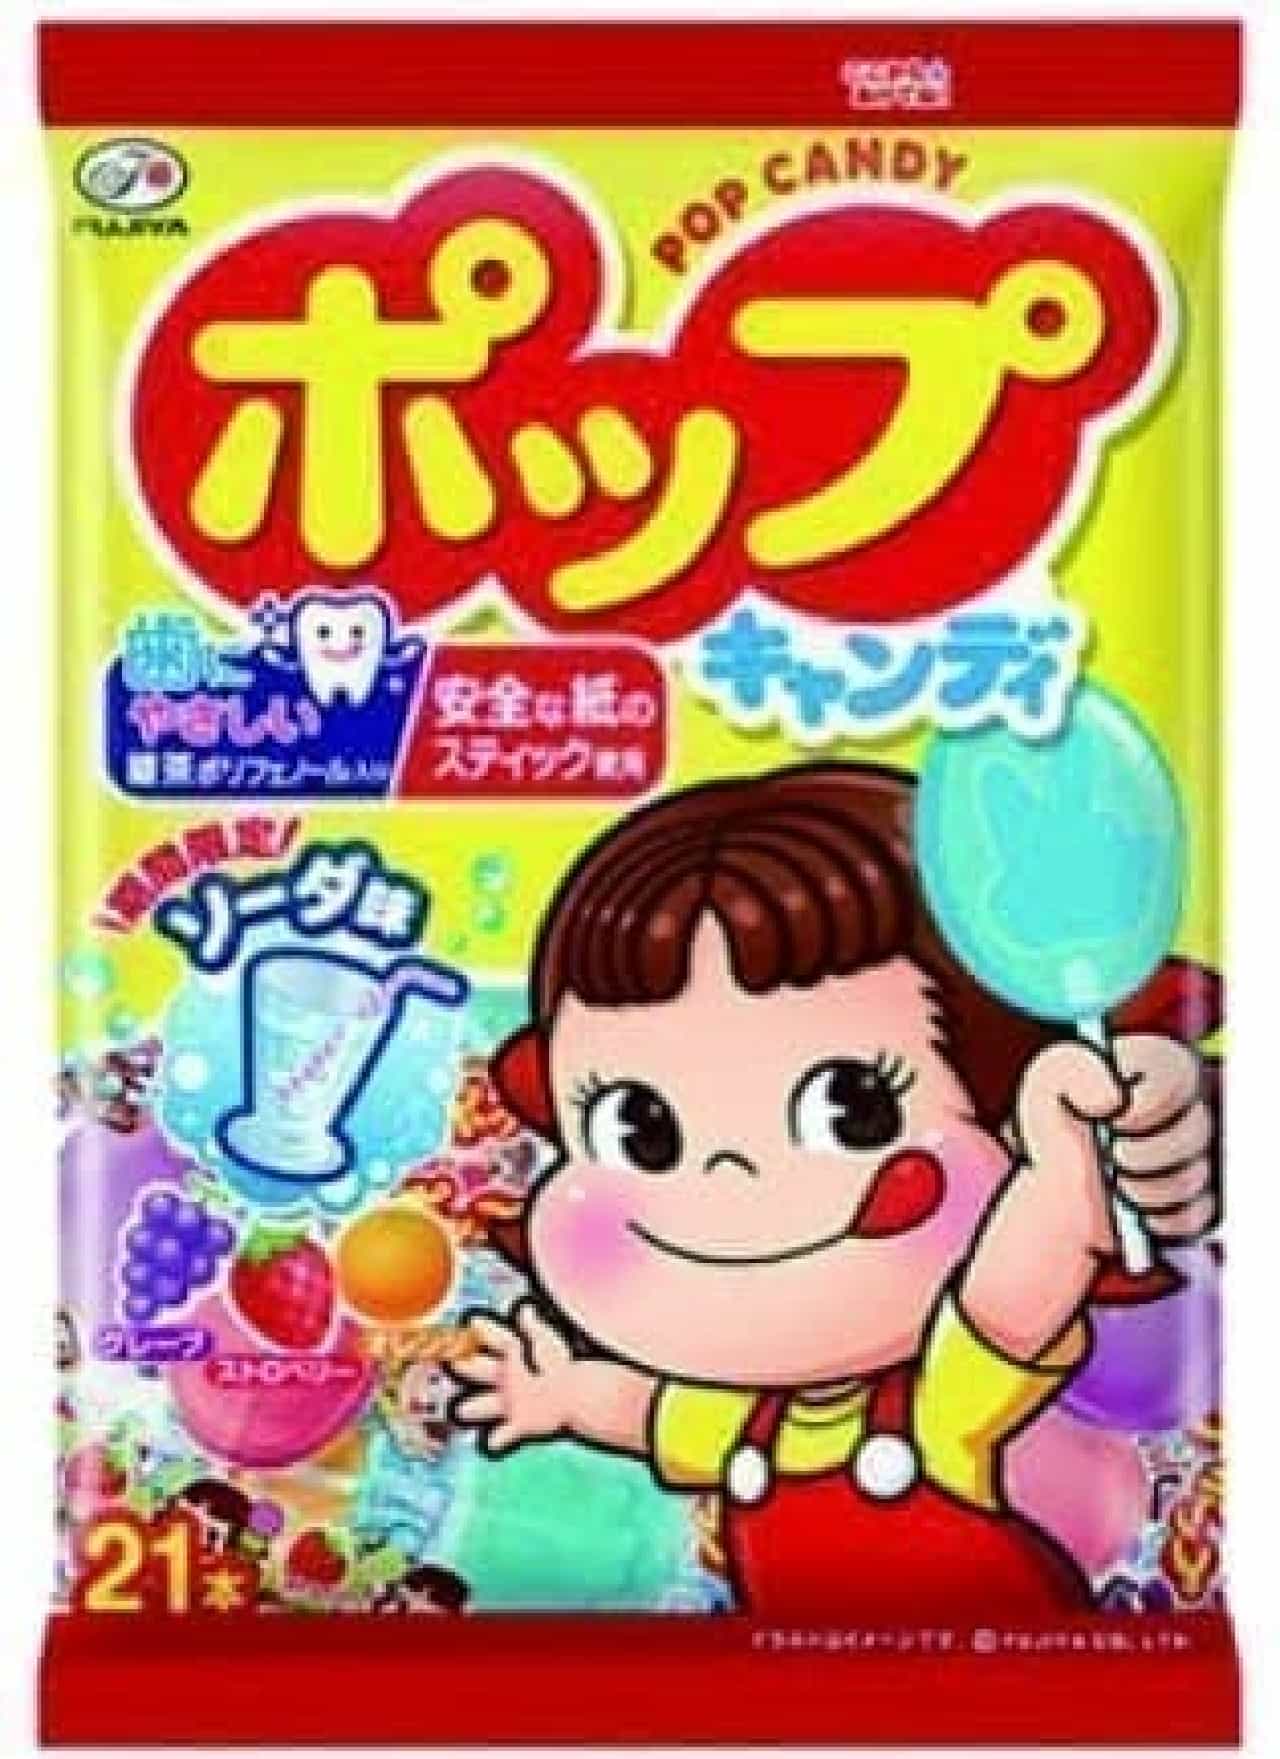 Fujiya "Pop Candy"